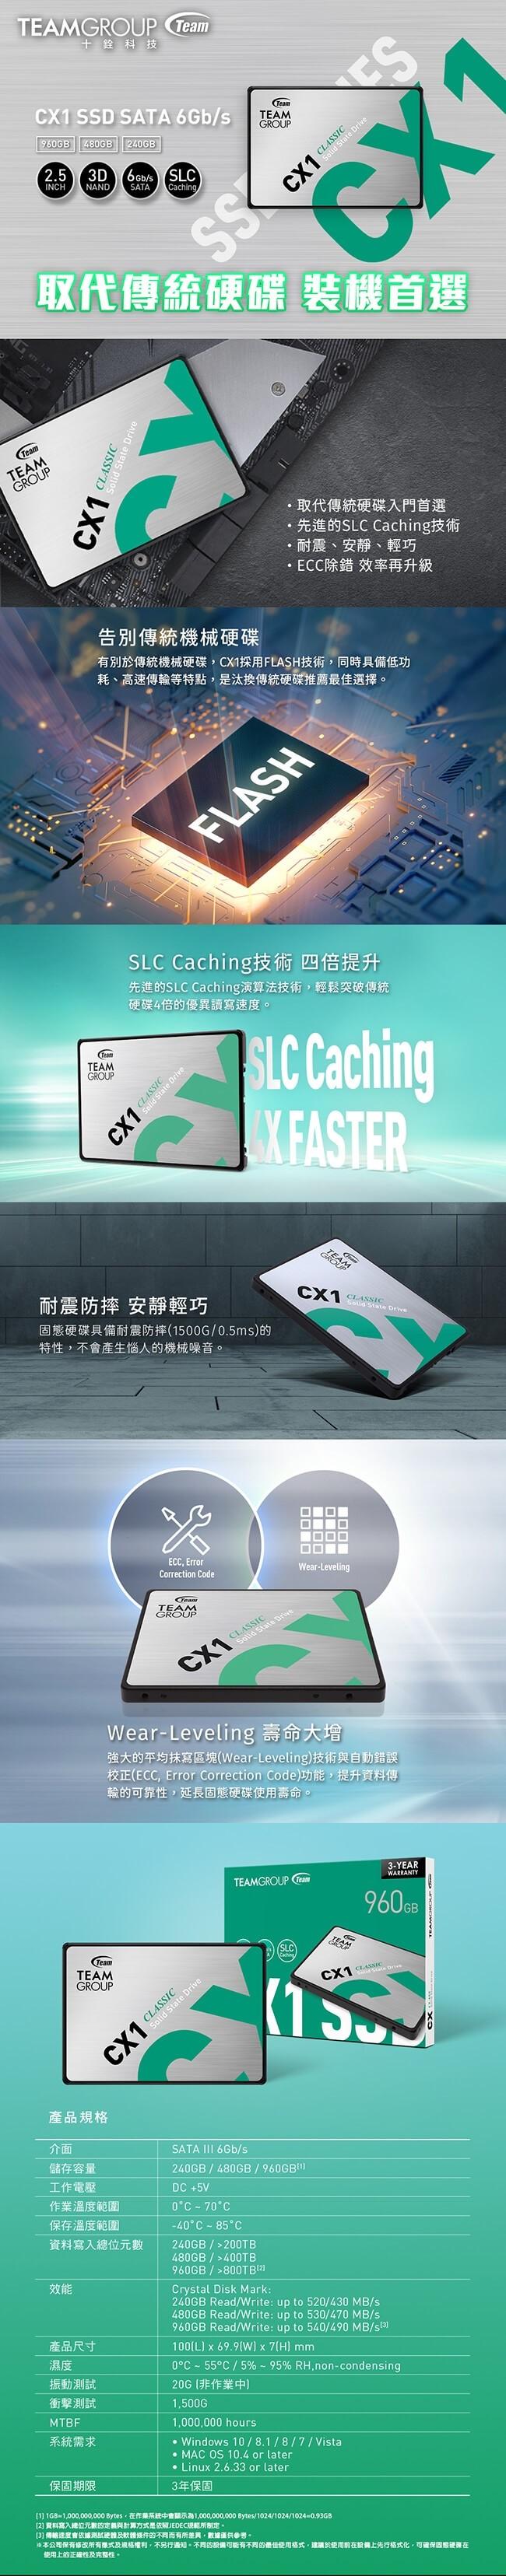 十銓 CX1 480GB 固態硬碟